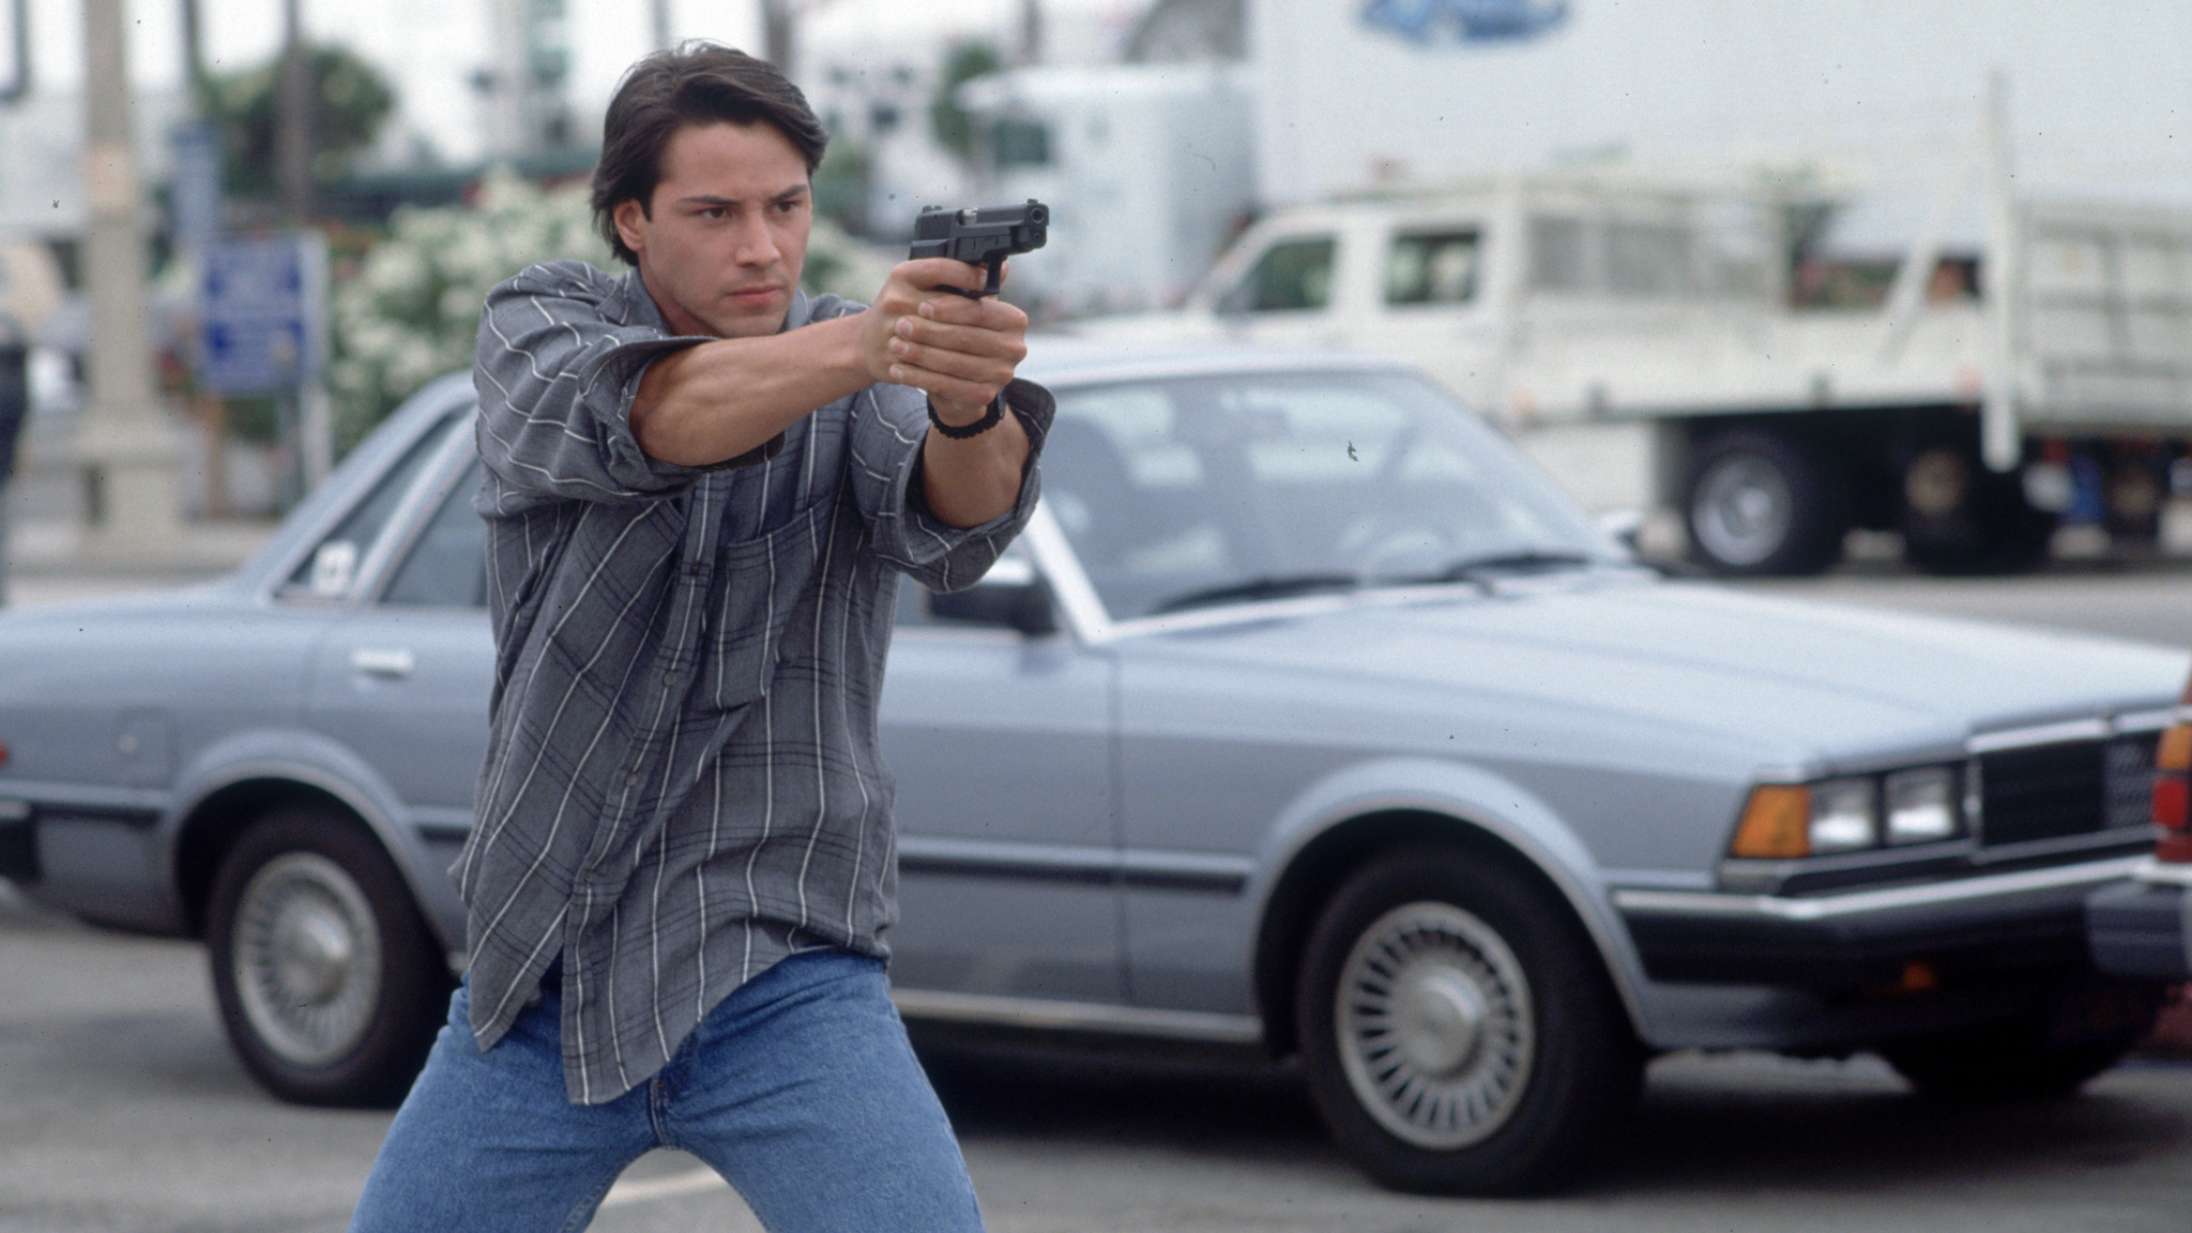 For 30 år siden genopfandt vovet politifilm  actiongenren – og gjorde Keanu Reeves til en stjerne